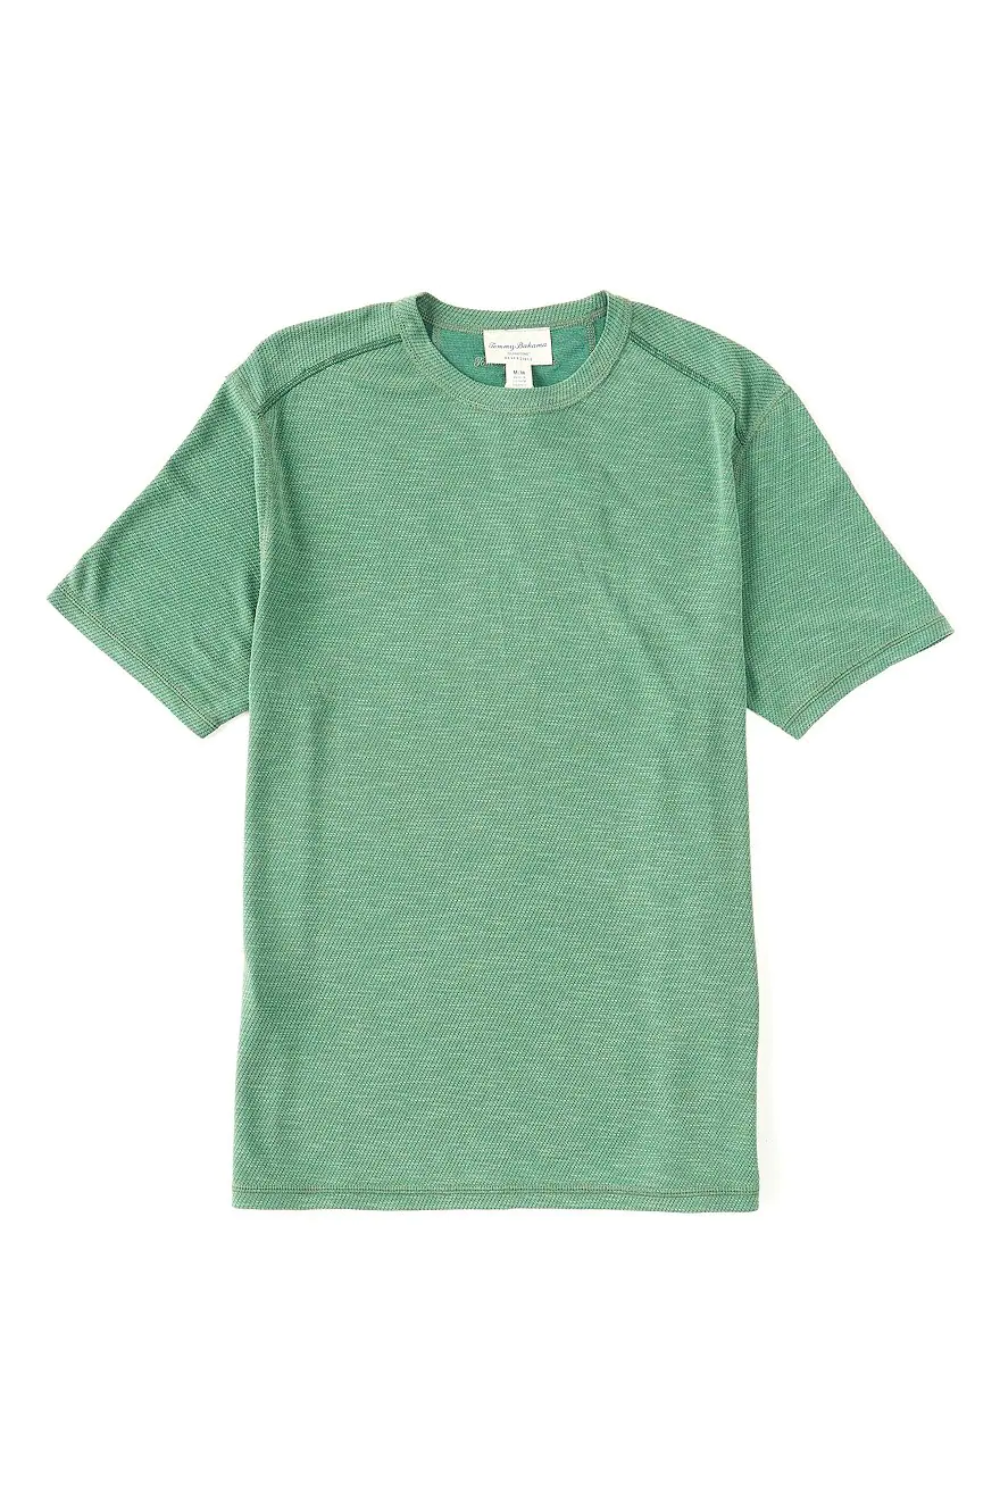 Tommy Bahama Flip Sky IslandZone T-Shirt - ST225661 – BeachToBlvd